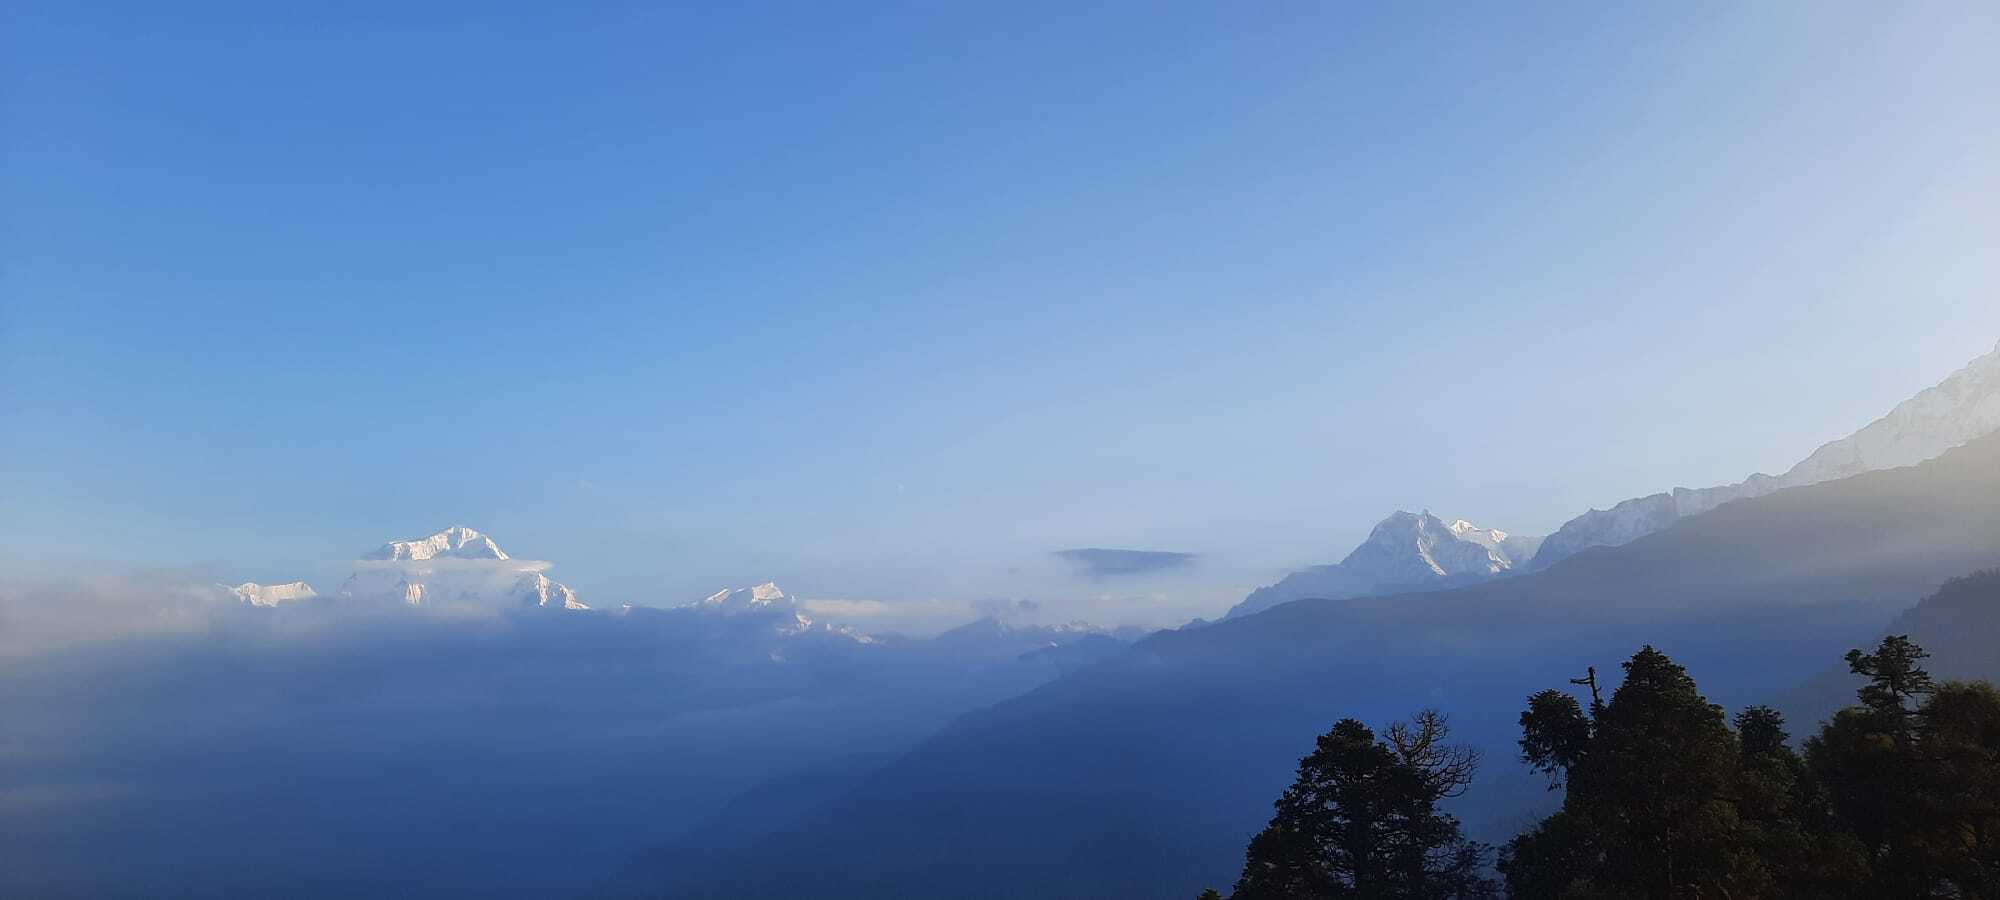 Trekking am Fusse des Himalaya